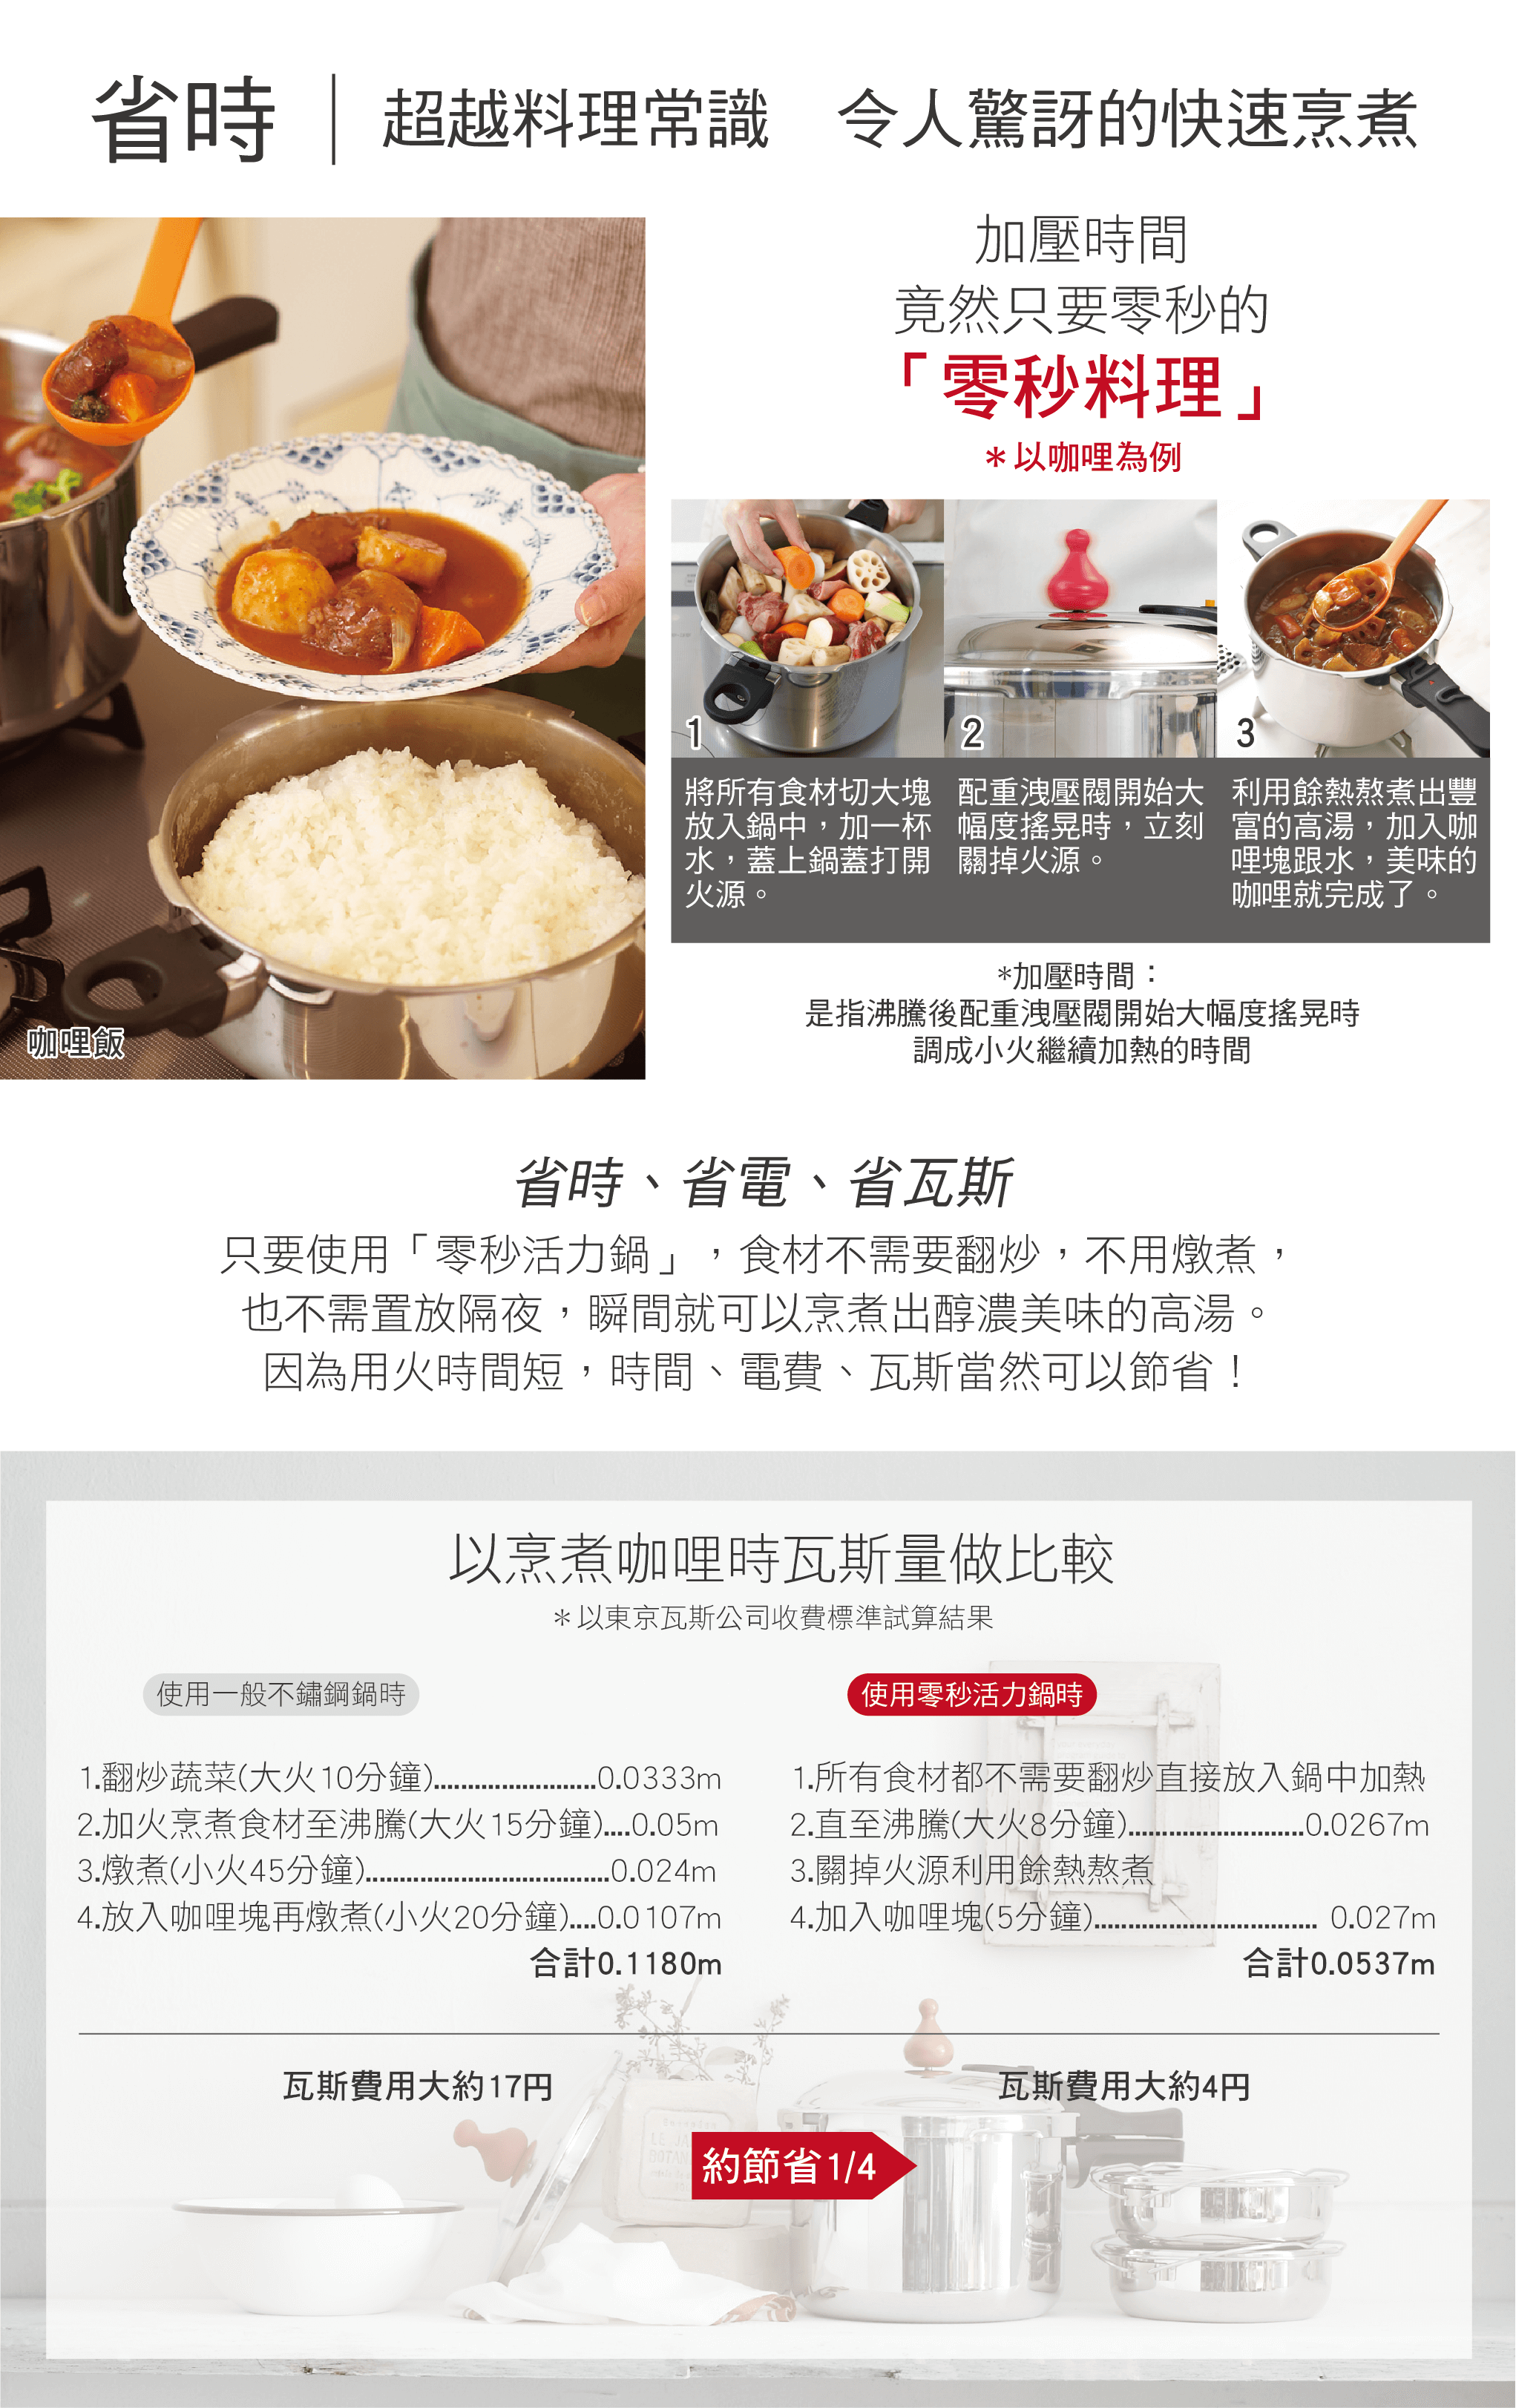 零秒活力鍋,日本製壓力鍋,最高世界等級料理氣壓,悶燒鍋,不鏽鋼鍋,日本鍋具